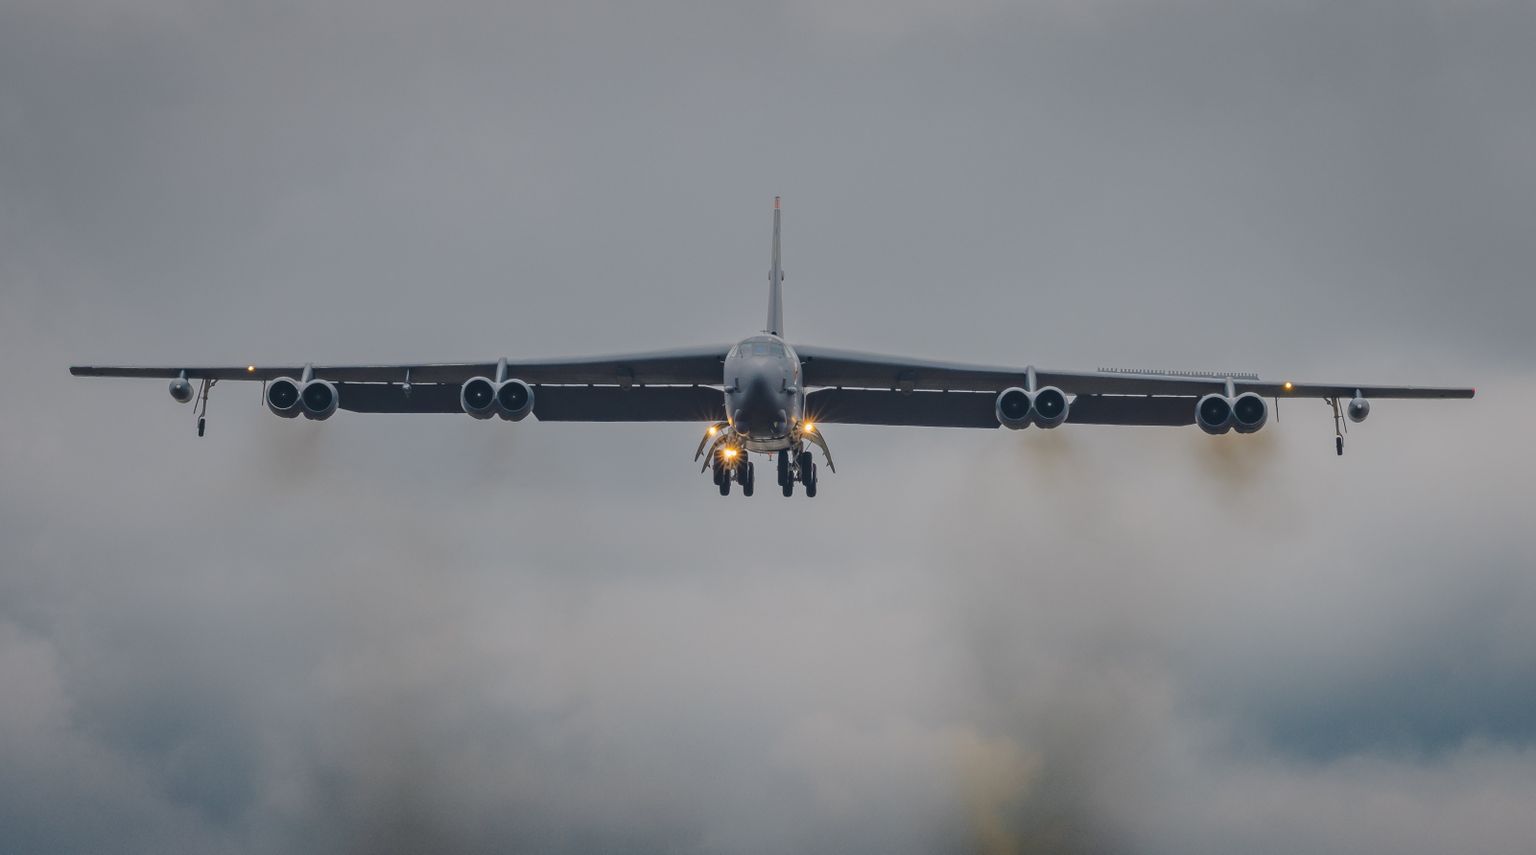 Сегодня над Эстонией некоторое время летал американский бомбардировщик B-52 Stratofortress.